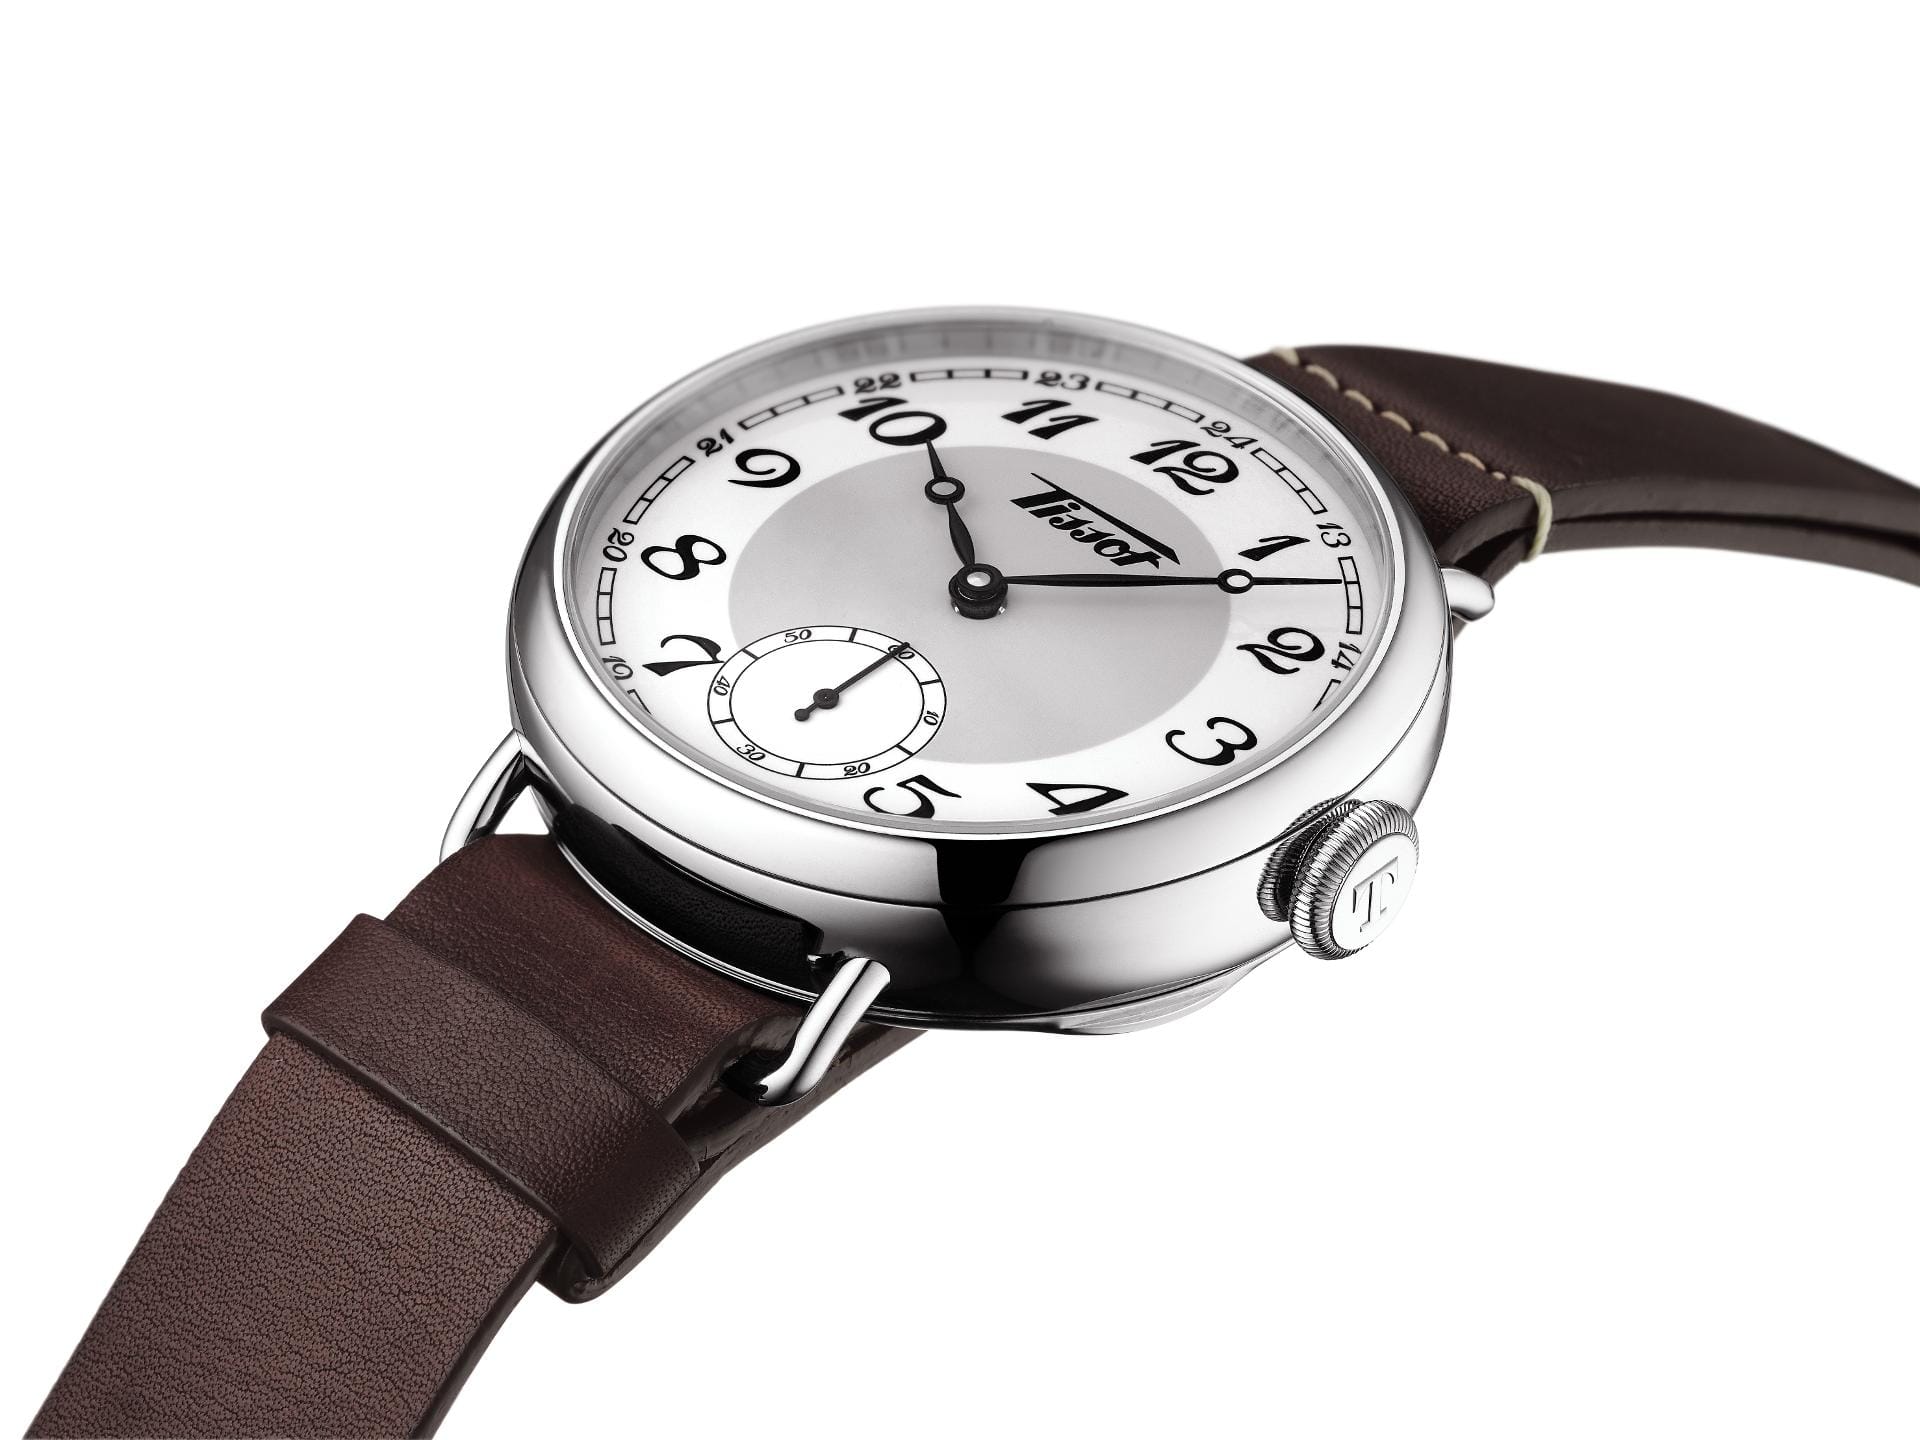 Ein Hingucker im Retro-Design ist die Heritage 1936 von Tissot. Die Uhr kommt mit Handaufzug und kostet 995 Euro.